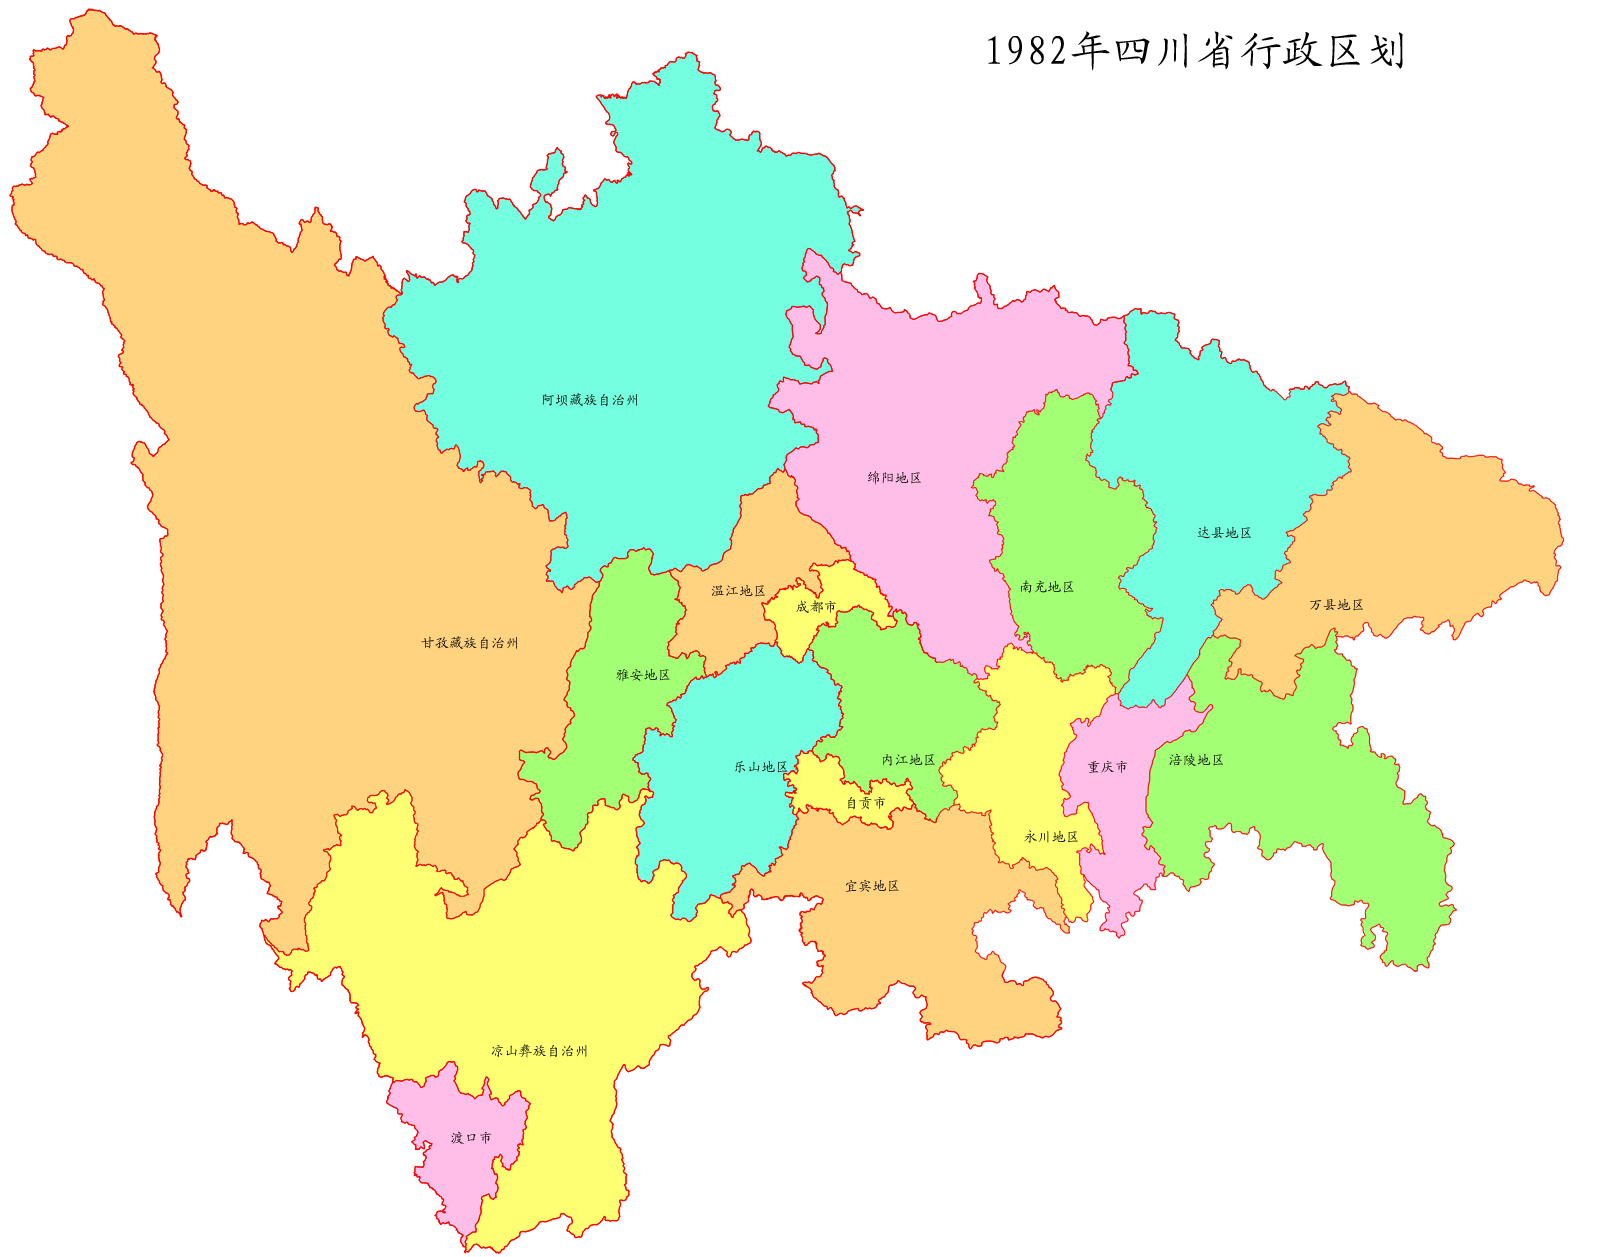 首次发布！2021年新版四川省行政区划图和标准地图 来看你的家乡有啥变化 - 封面新闻